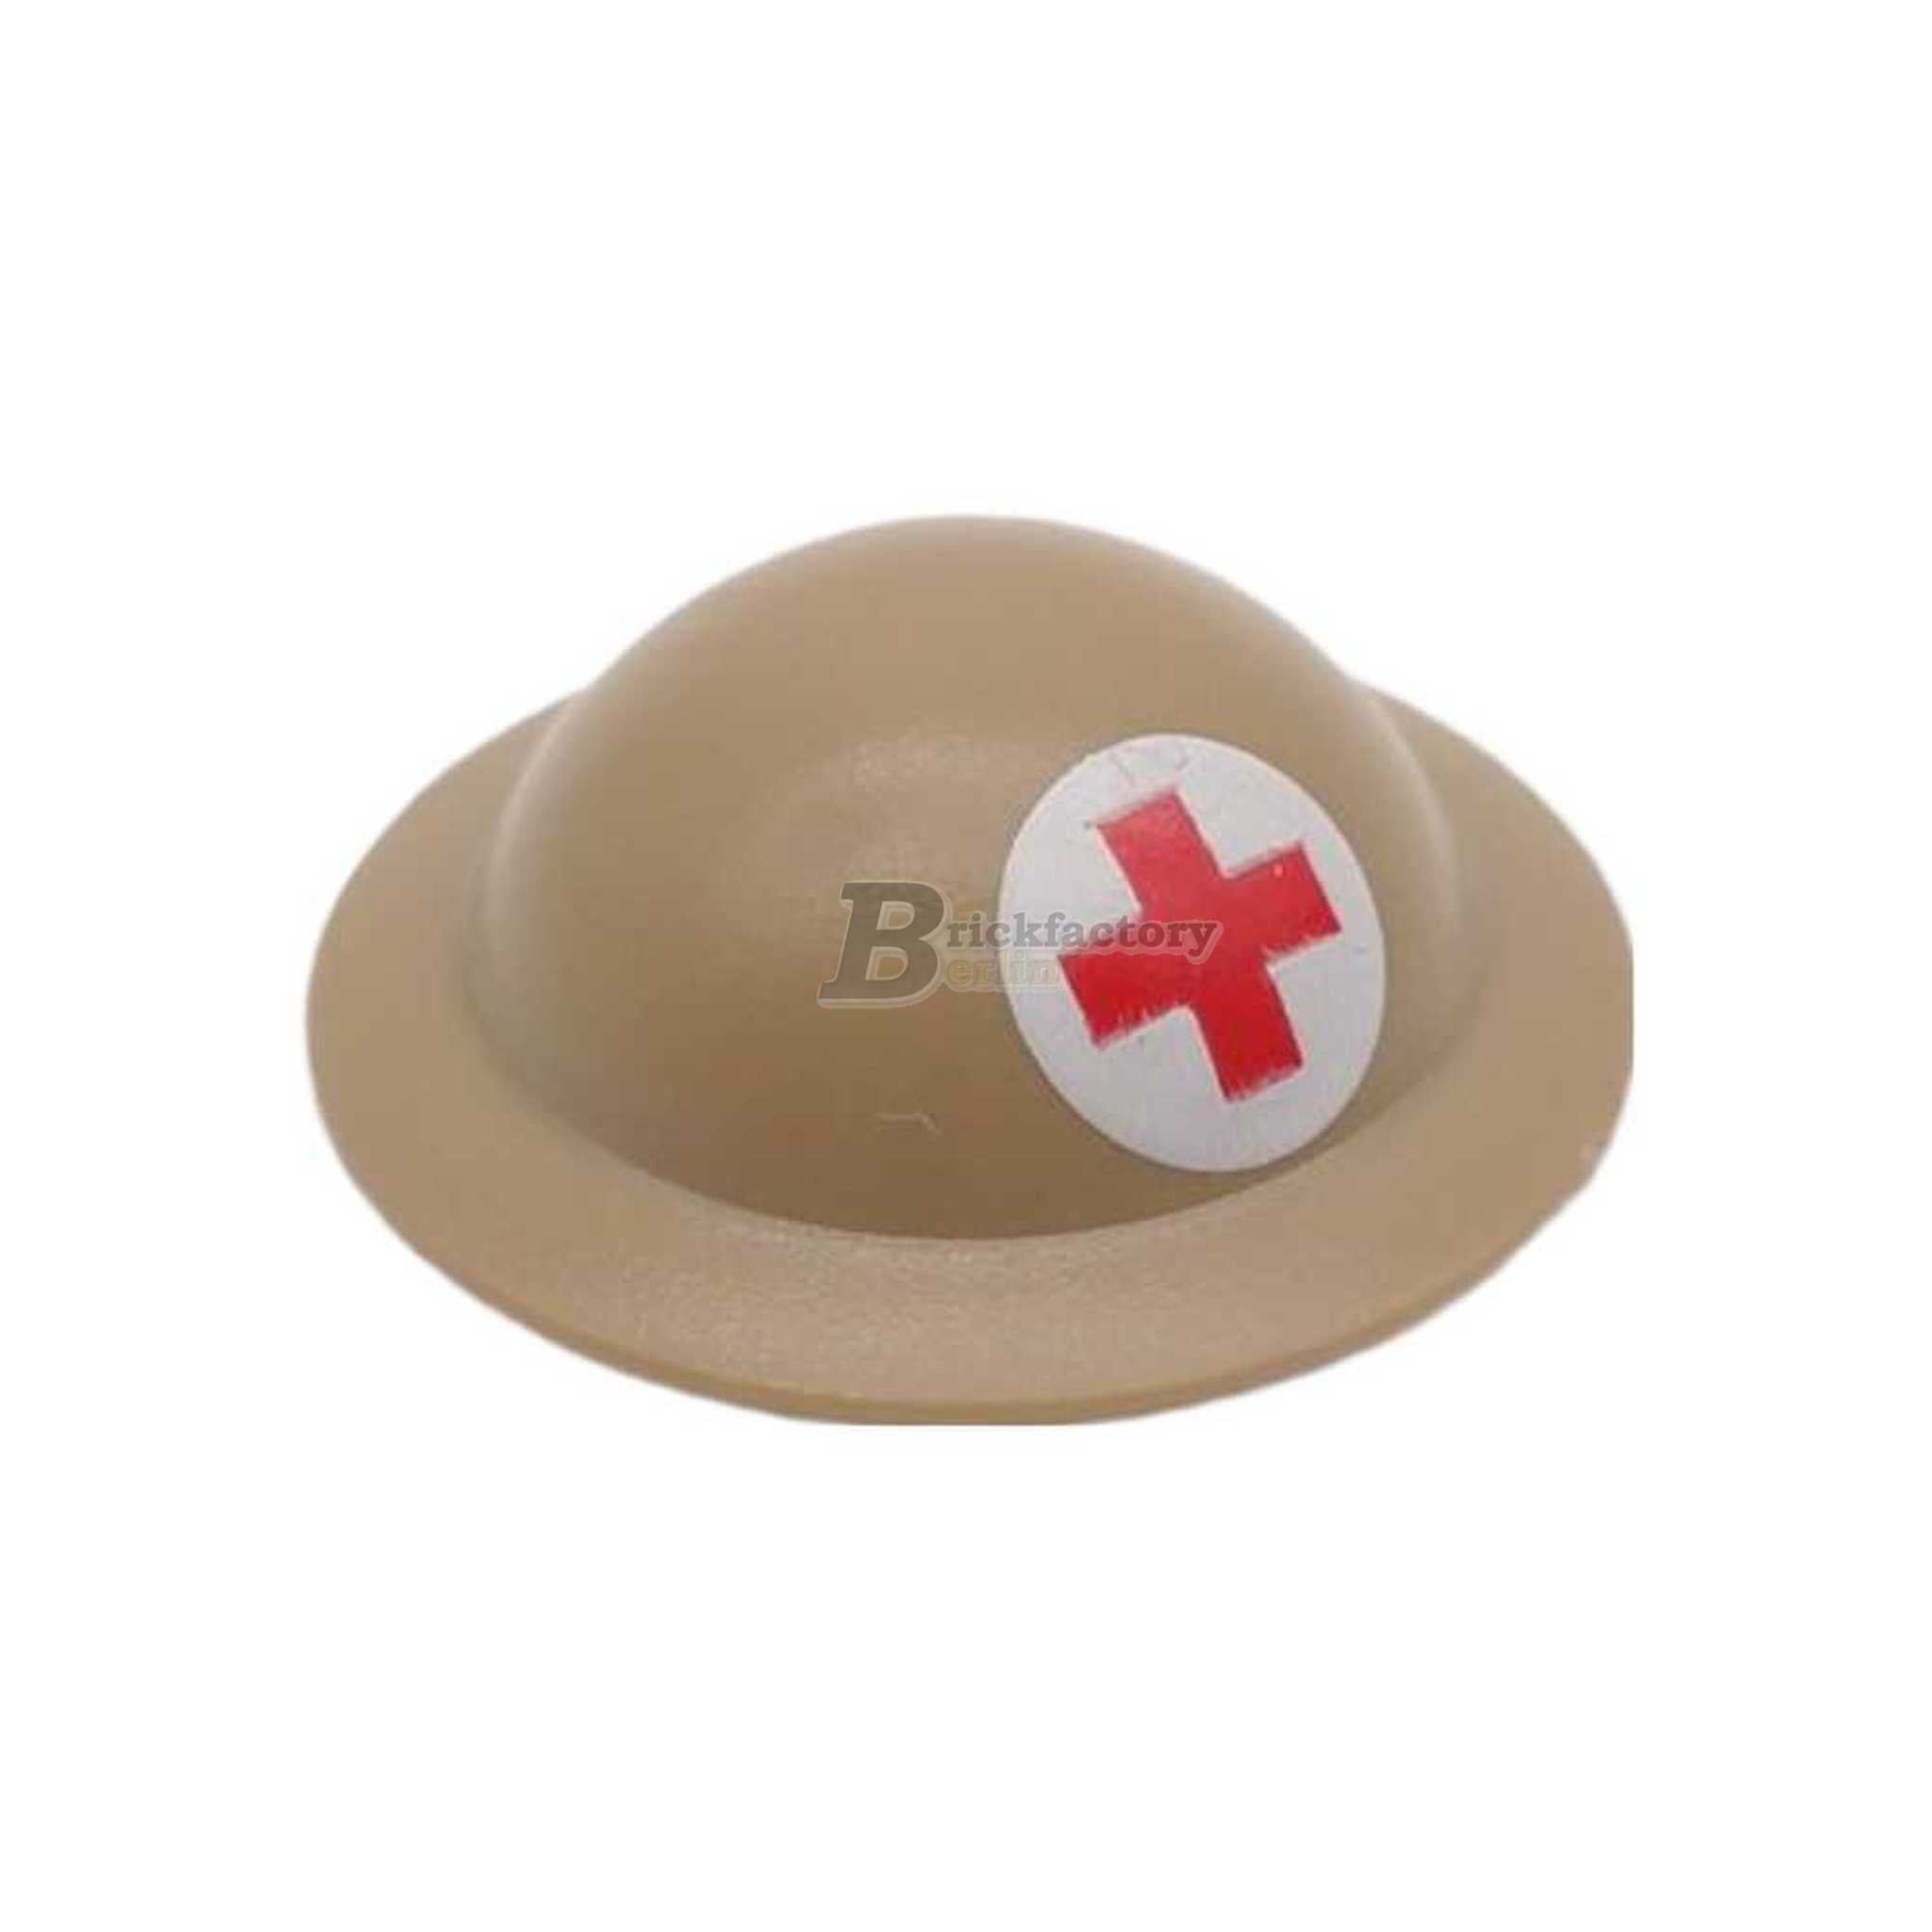 BF-0505 -WWII Helmet Red Cross Brodie England (Brickfactory)